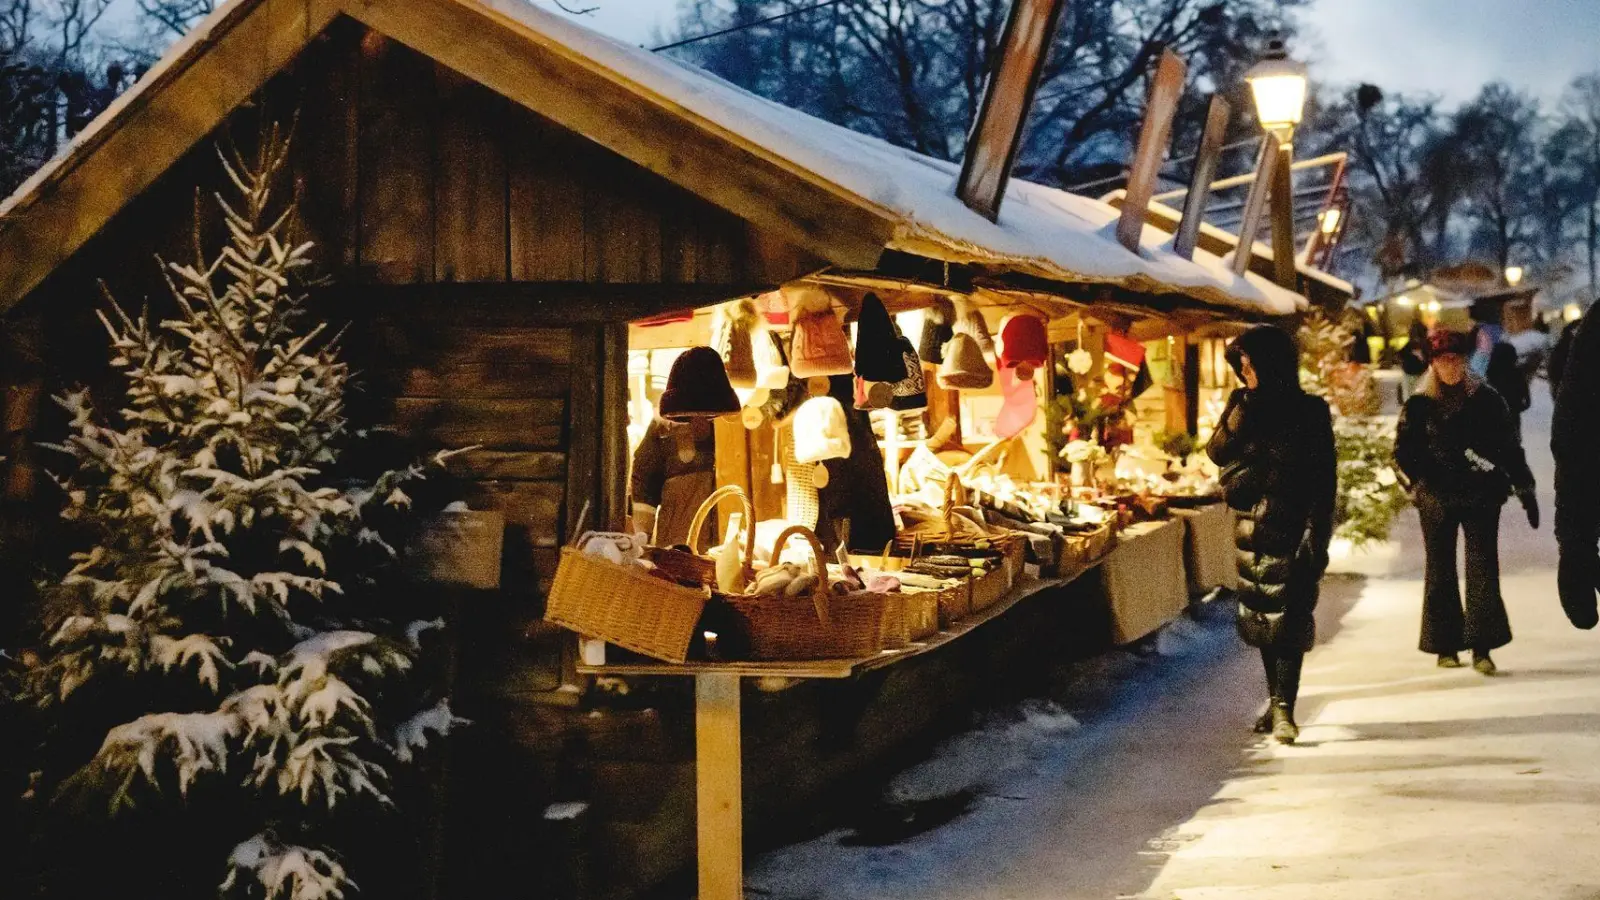 Mützen sind gut zu gebrauchen, wenn man im winterlichen Stockholm umherflaniert - wer noch keine hat, kann etwa auf dem Weihnachtsmarkt auf dem Skansen-Museumsgelände eine kaufen. (Foto: Skansen/dpa-tmn)